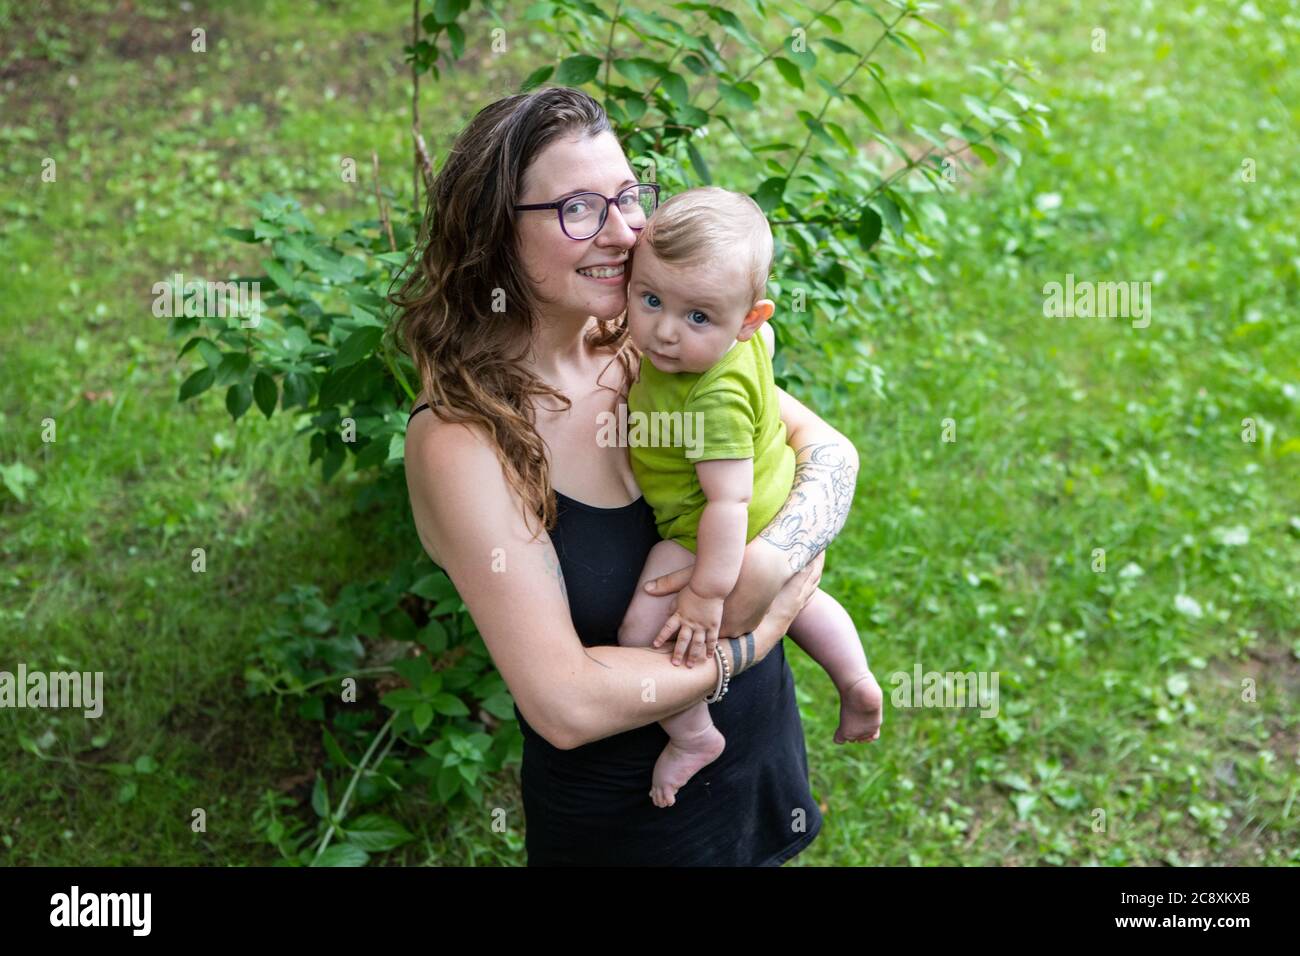 Porträt einer Mutter und ihres Babys, im Freien im Hinterhof. Mama hält ihren Sohn in den Armen, beide posieren für die Kamera, Mama mit einem großen Lächeln. Stockfoto